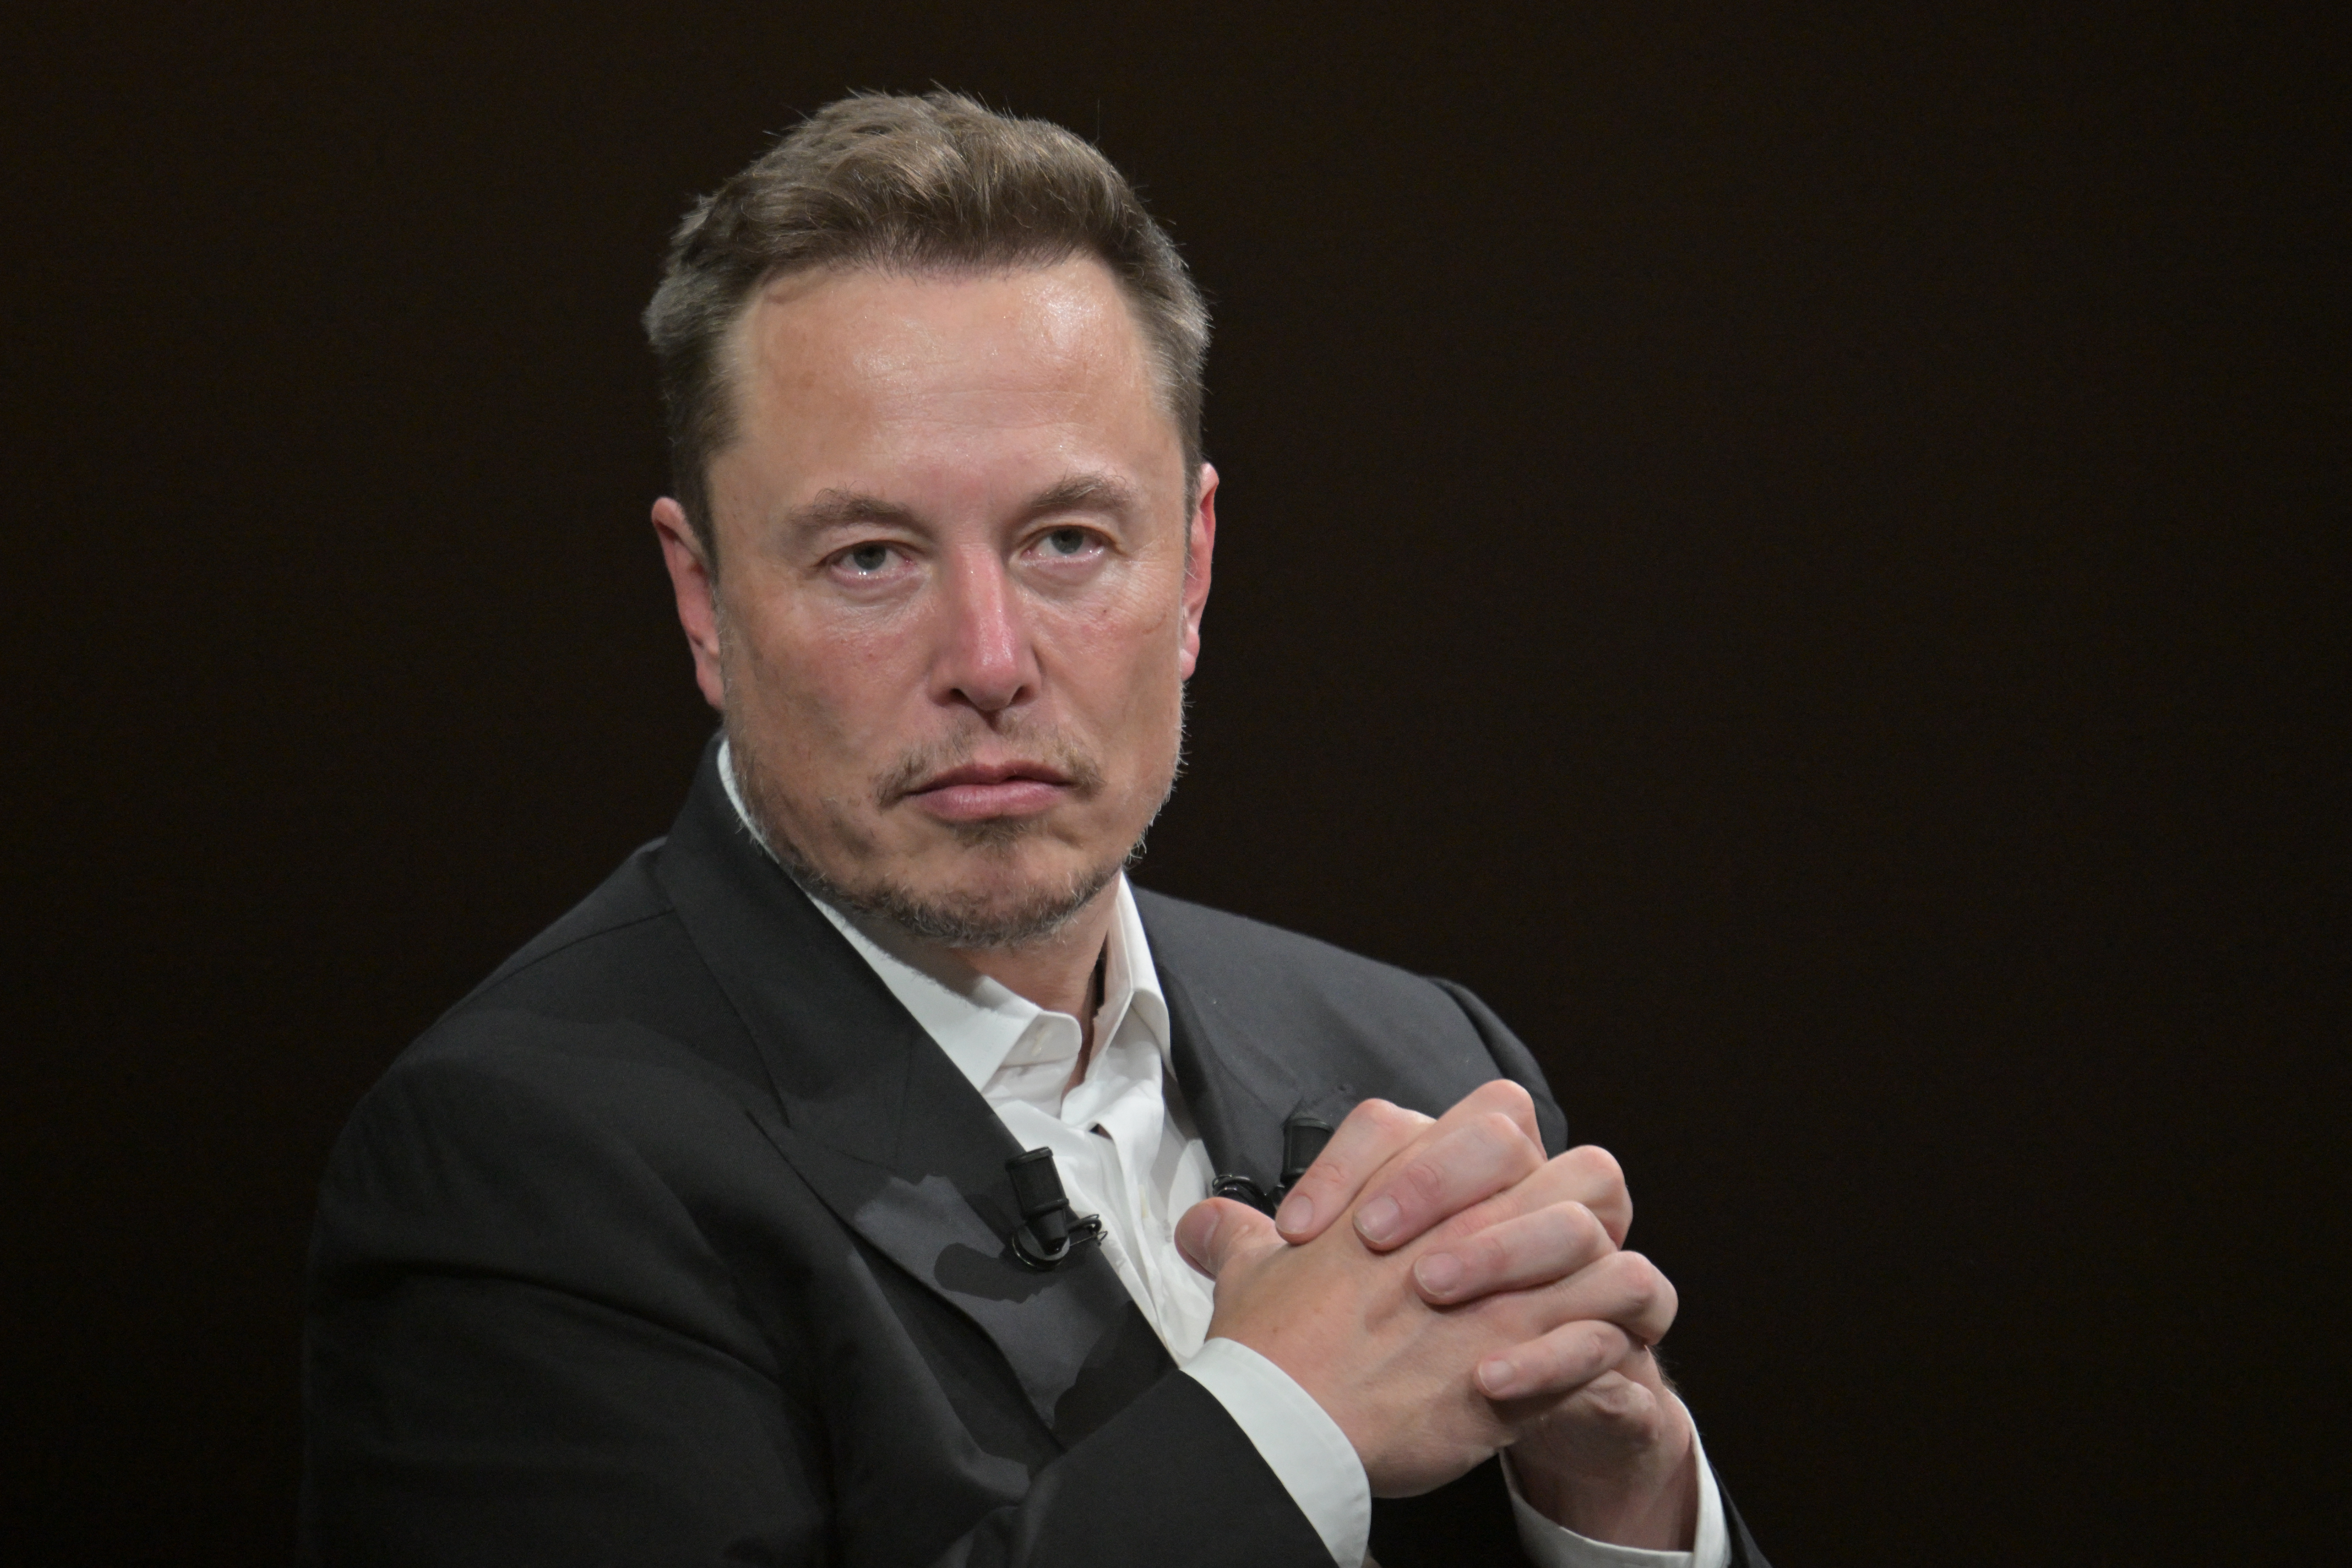 El CEO de Twitter, Elon Musk, ha sido criticado por los usuarios después de anunciar que la plataforma limitaría la cantidad de mensajes privados que los usuarios no verificados pueden enviar diariamente.